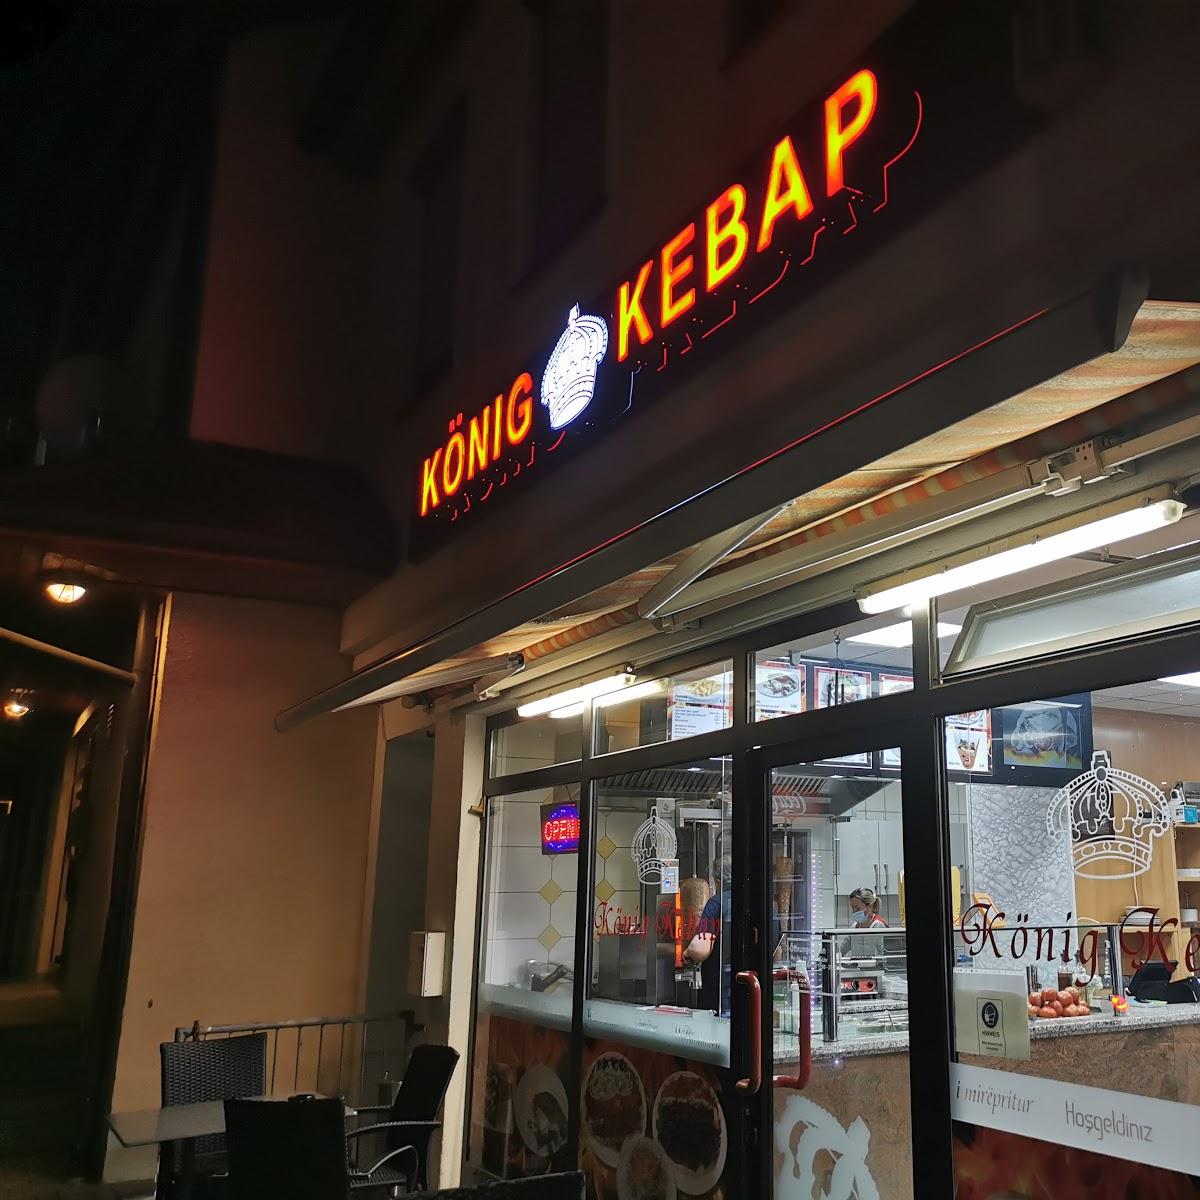 Restaurant "König-Kebab" in  Illertissen